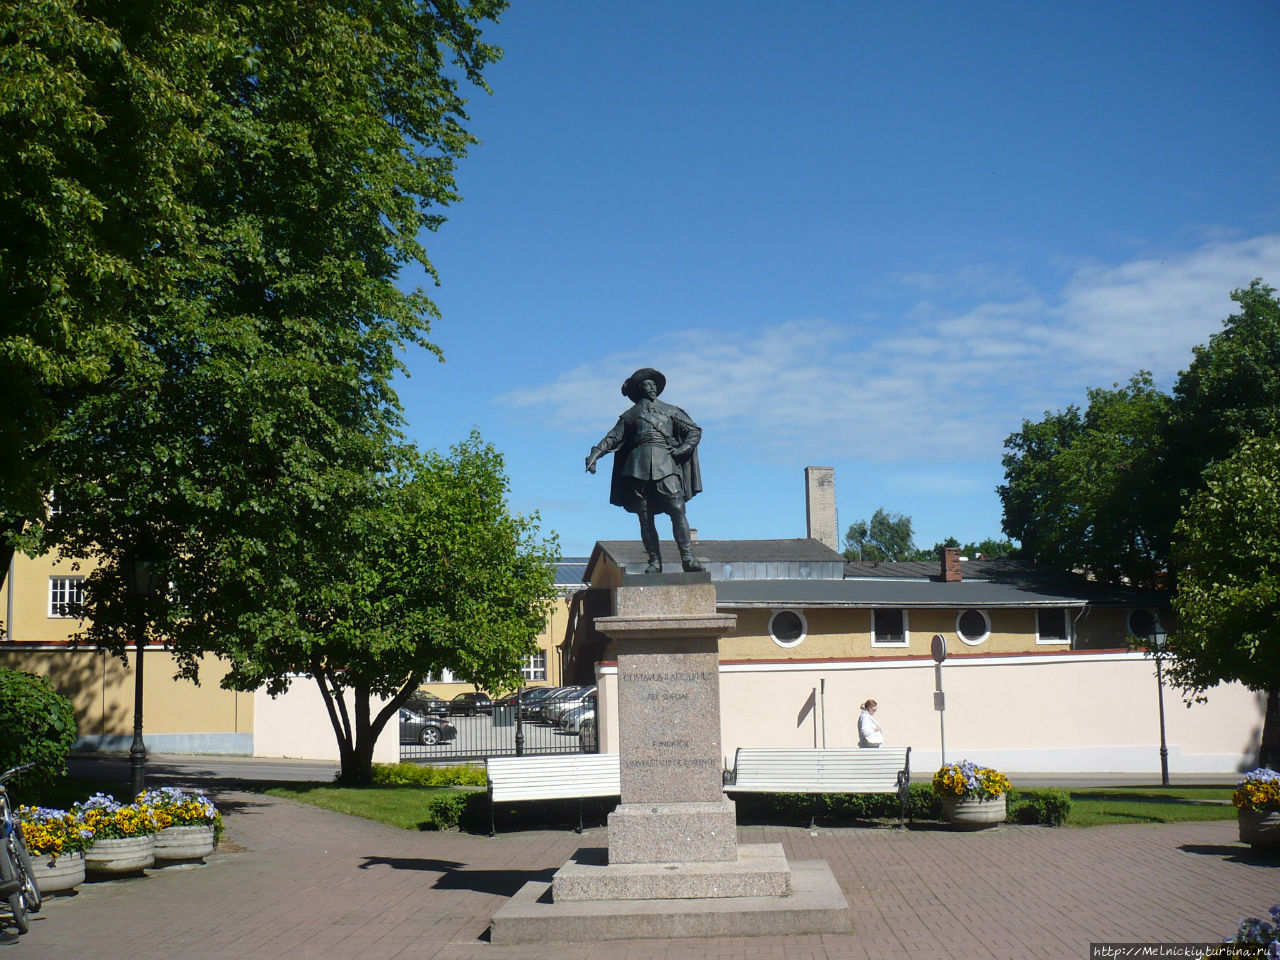 Памятник королю Гутсаву II Адольфу Тарту, Эстония